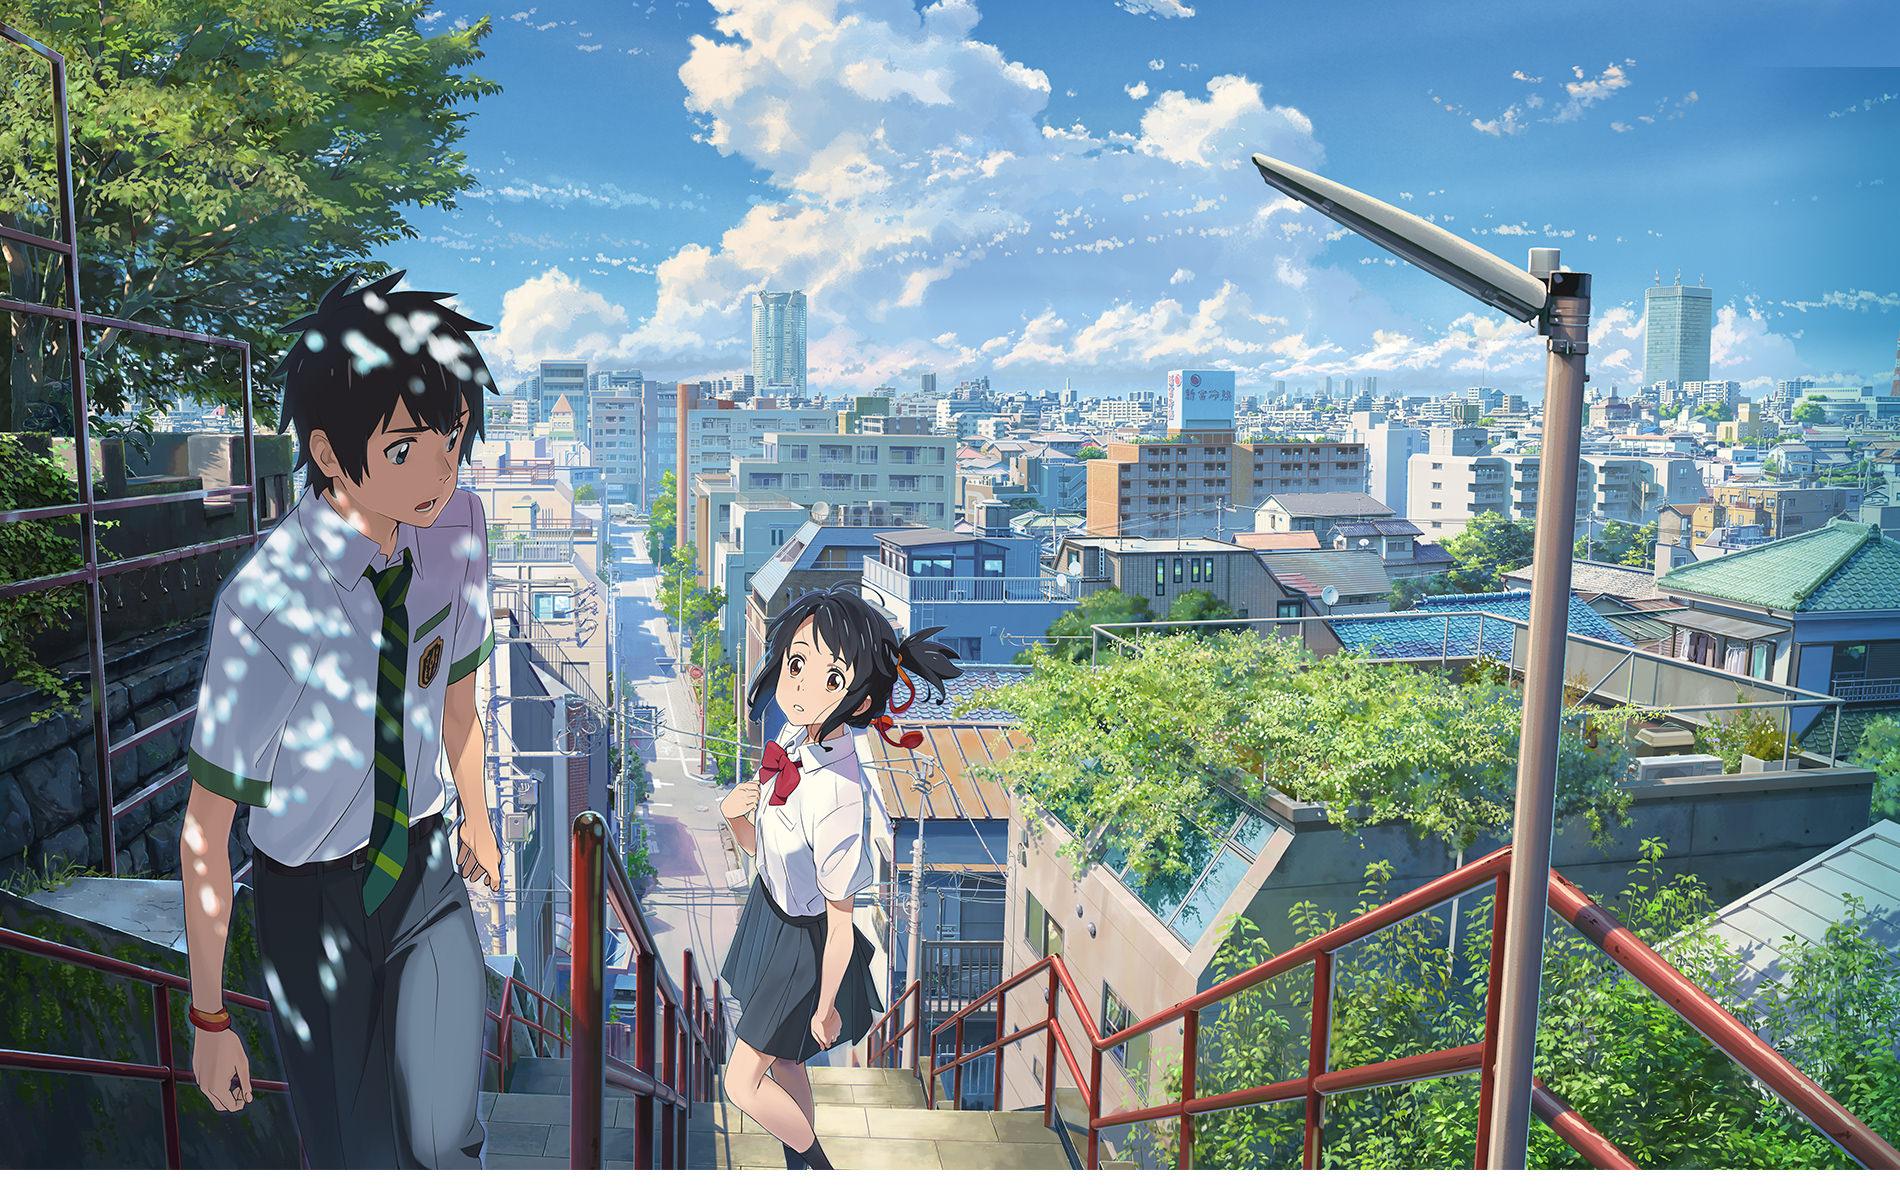 Kimi no Na wa. / Your Name. Anime Movie Review. Heart of Manga